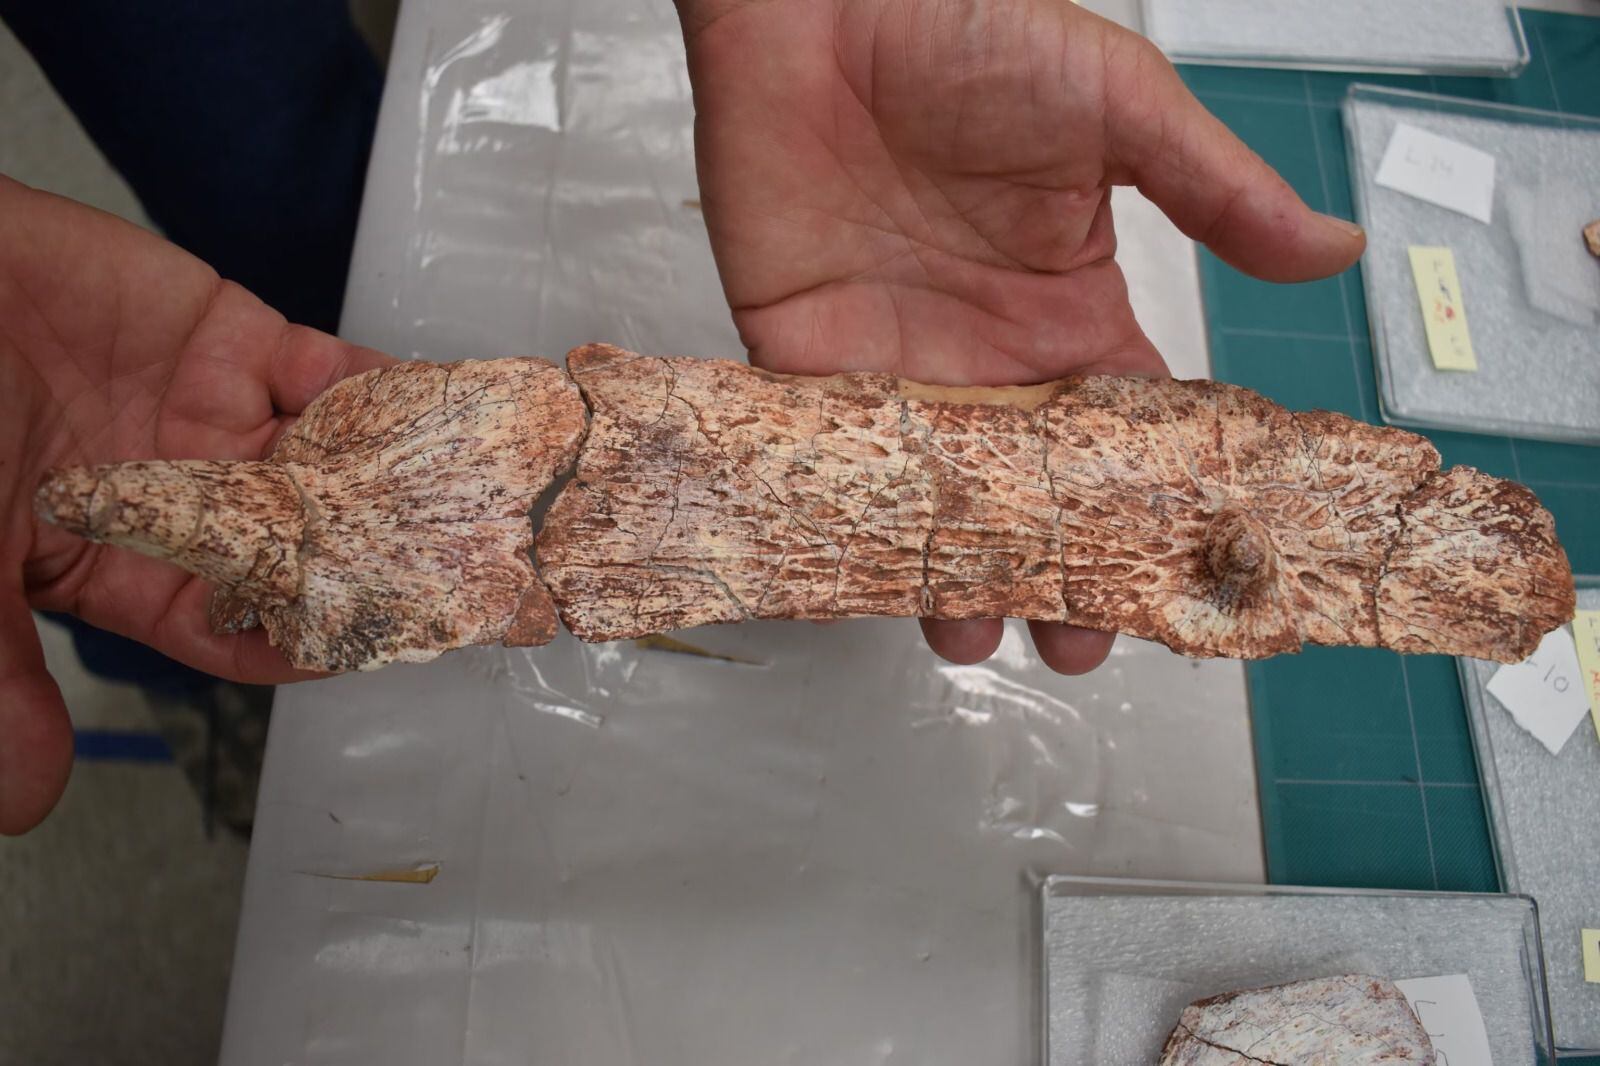 La clasificación de Garzapelta muelleri como nueva especie destaca por sus placas osteodérmicas únicas y marcas distintivas en los huesos. (William Reyes/Universidad de Texas en Austin)